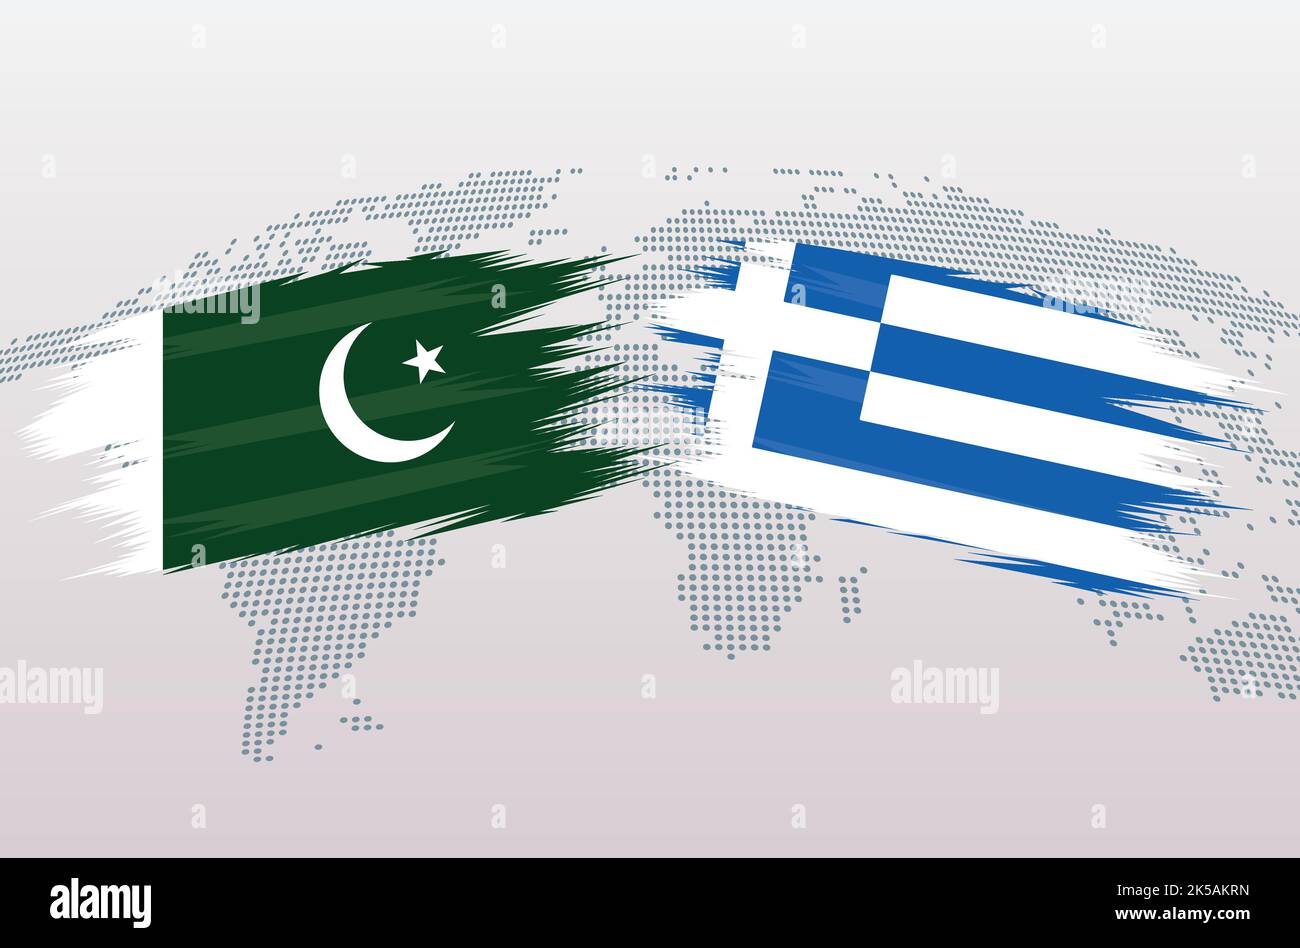 Bandiere Pakistan vs Grecia. Bandiere della Repubblica islamica del Pakistan contro la Grecia, isolate su sfondo grigio della mappa del mondo. Illustrazione vettoriale. Illustrazione Vettoriale